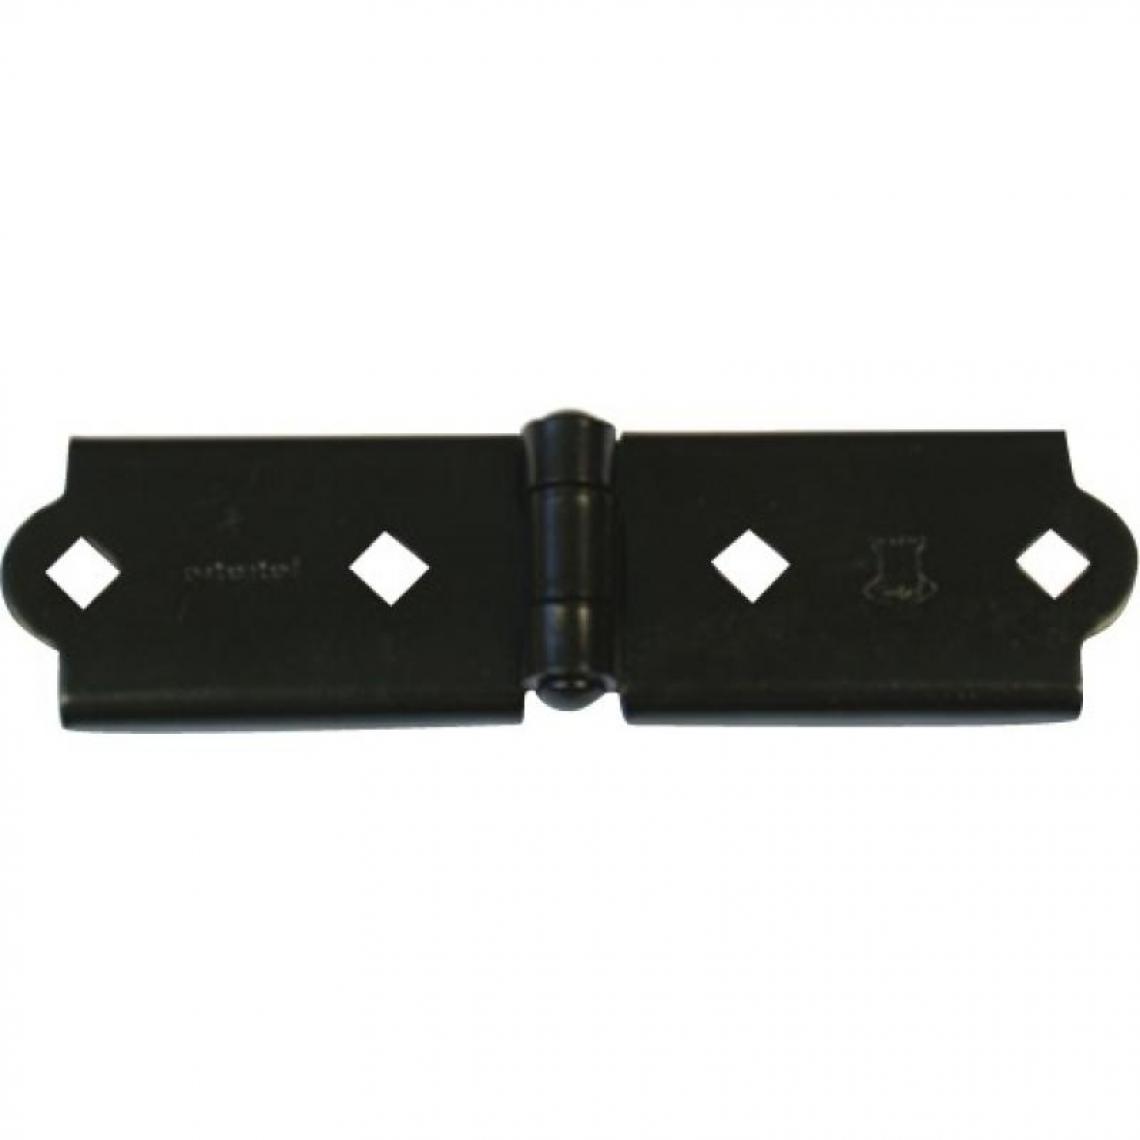 Torbel Industrie - Charnière pour penture en 35 mm noir - Charnière de fenetre